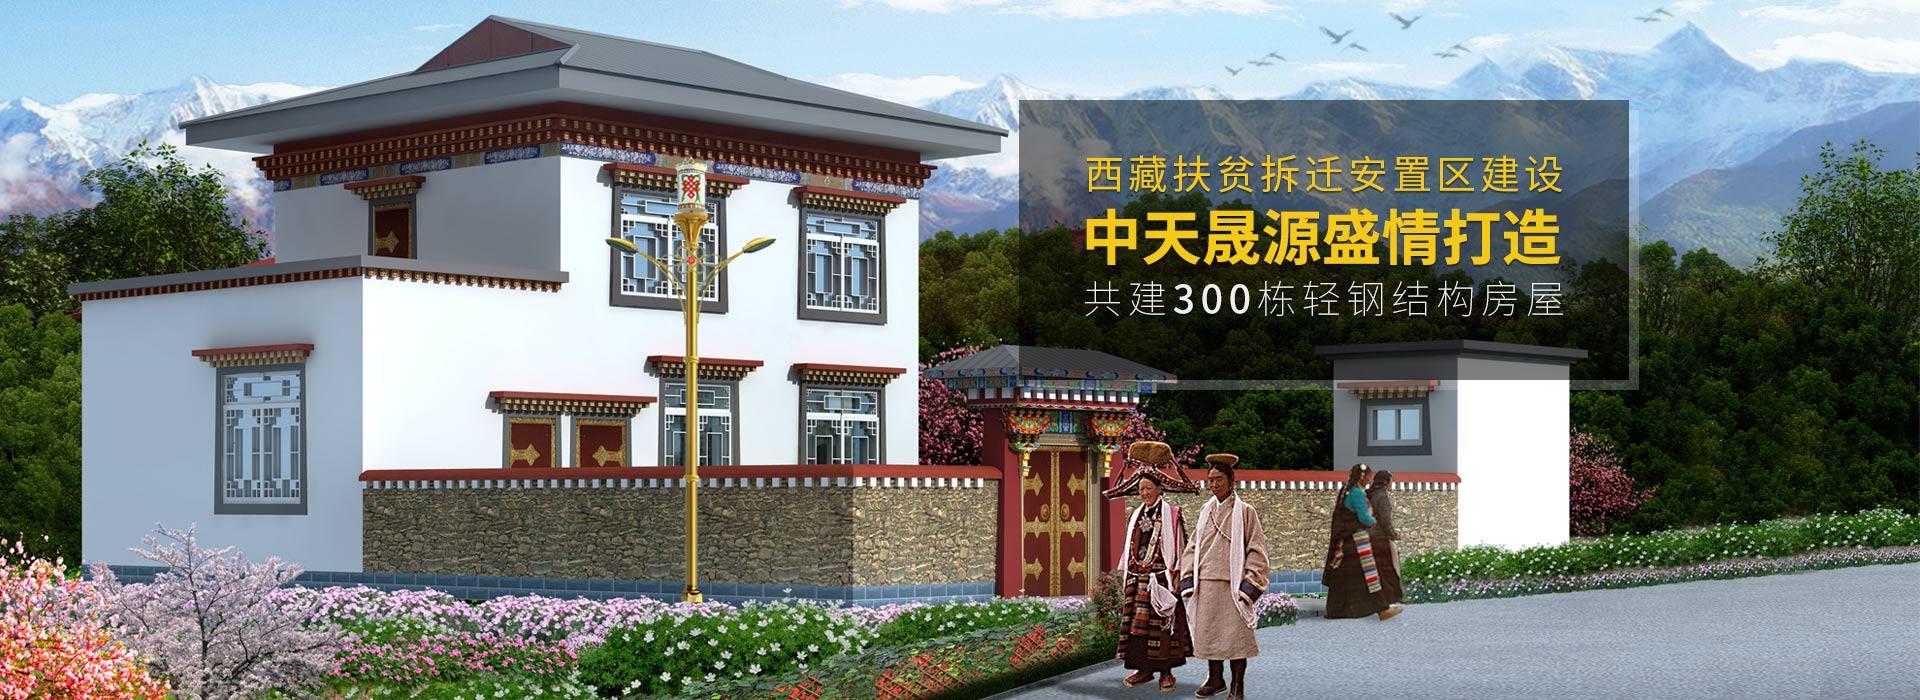 凯发网址直营
盛情打造西藏扶贫拆迁安置区建设轻钢结构房屋